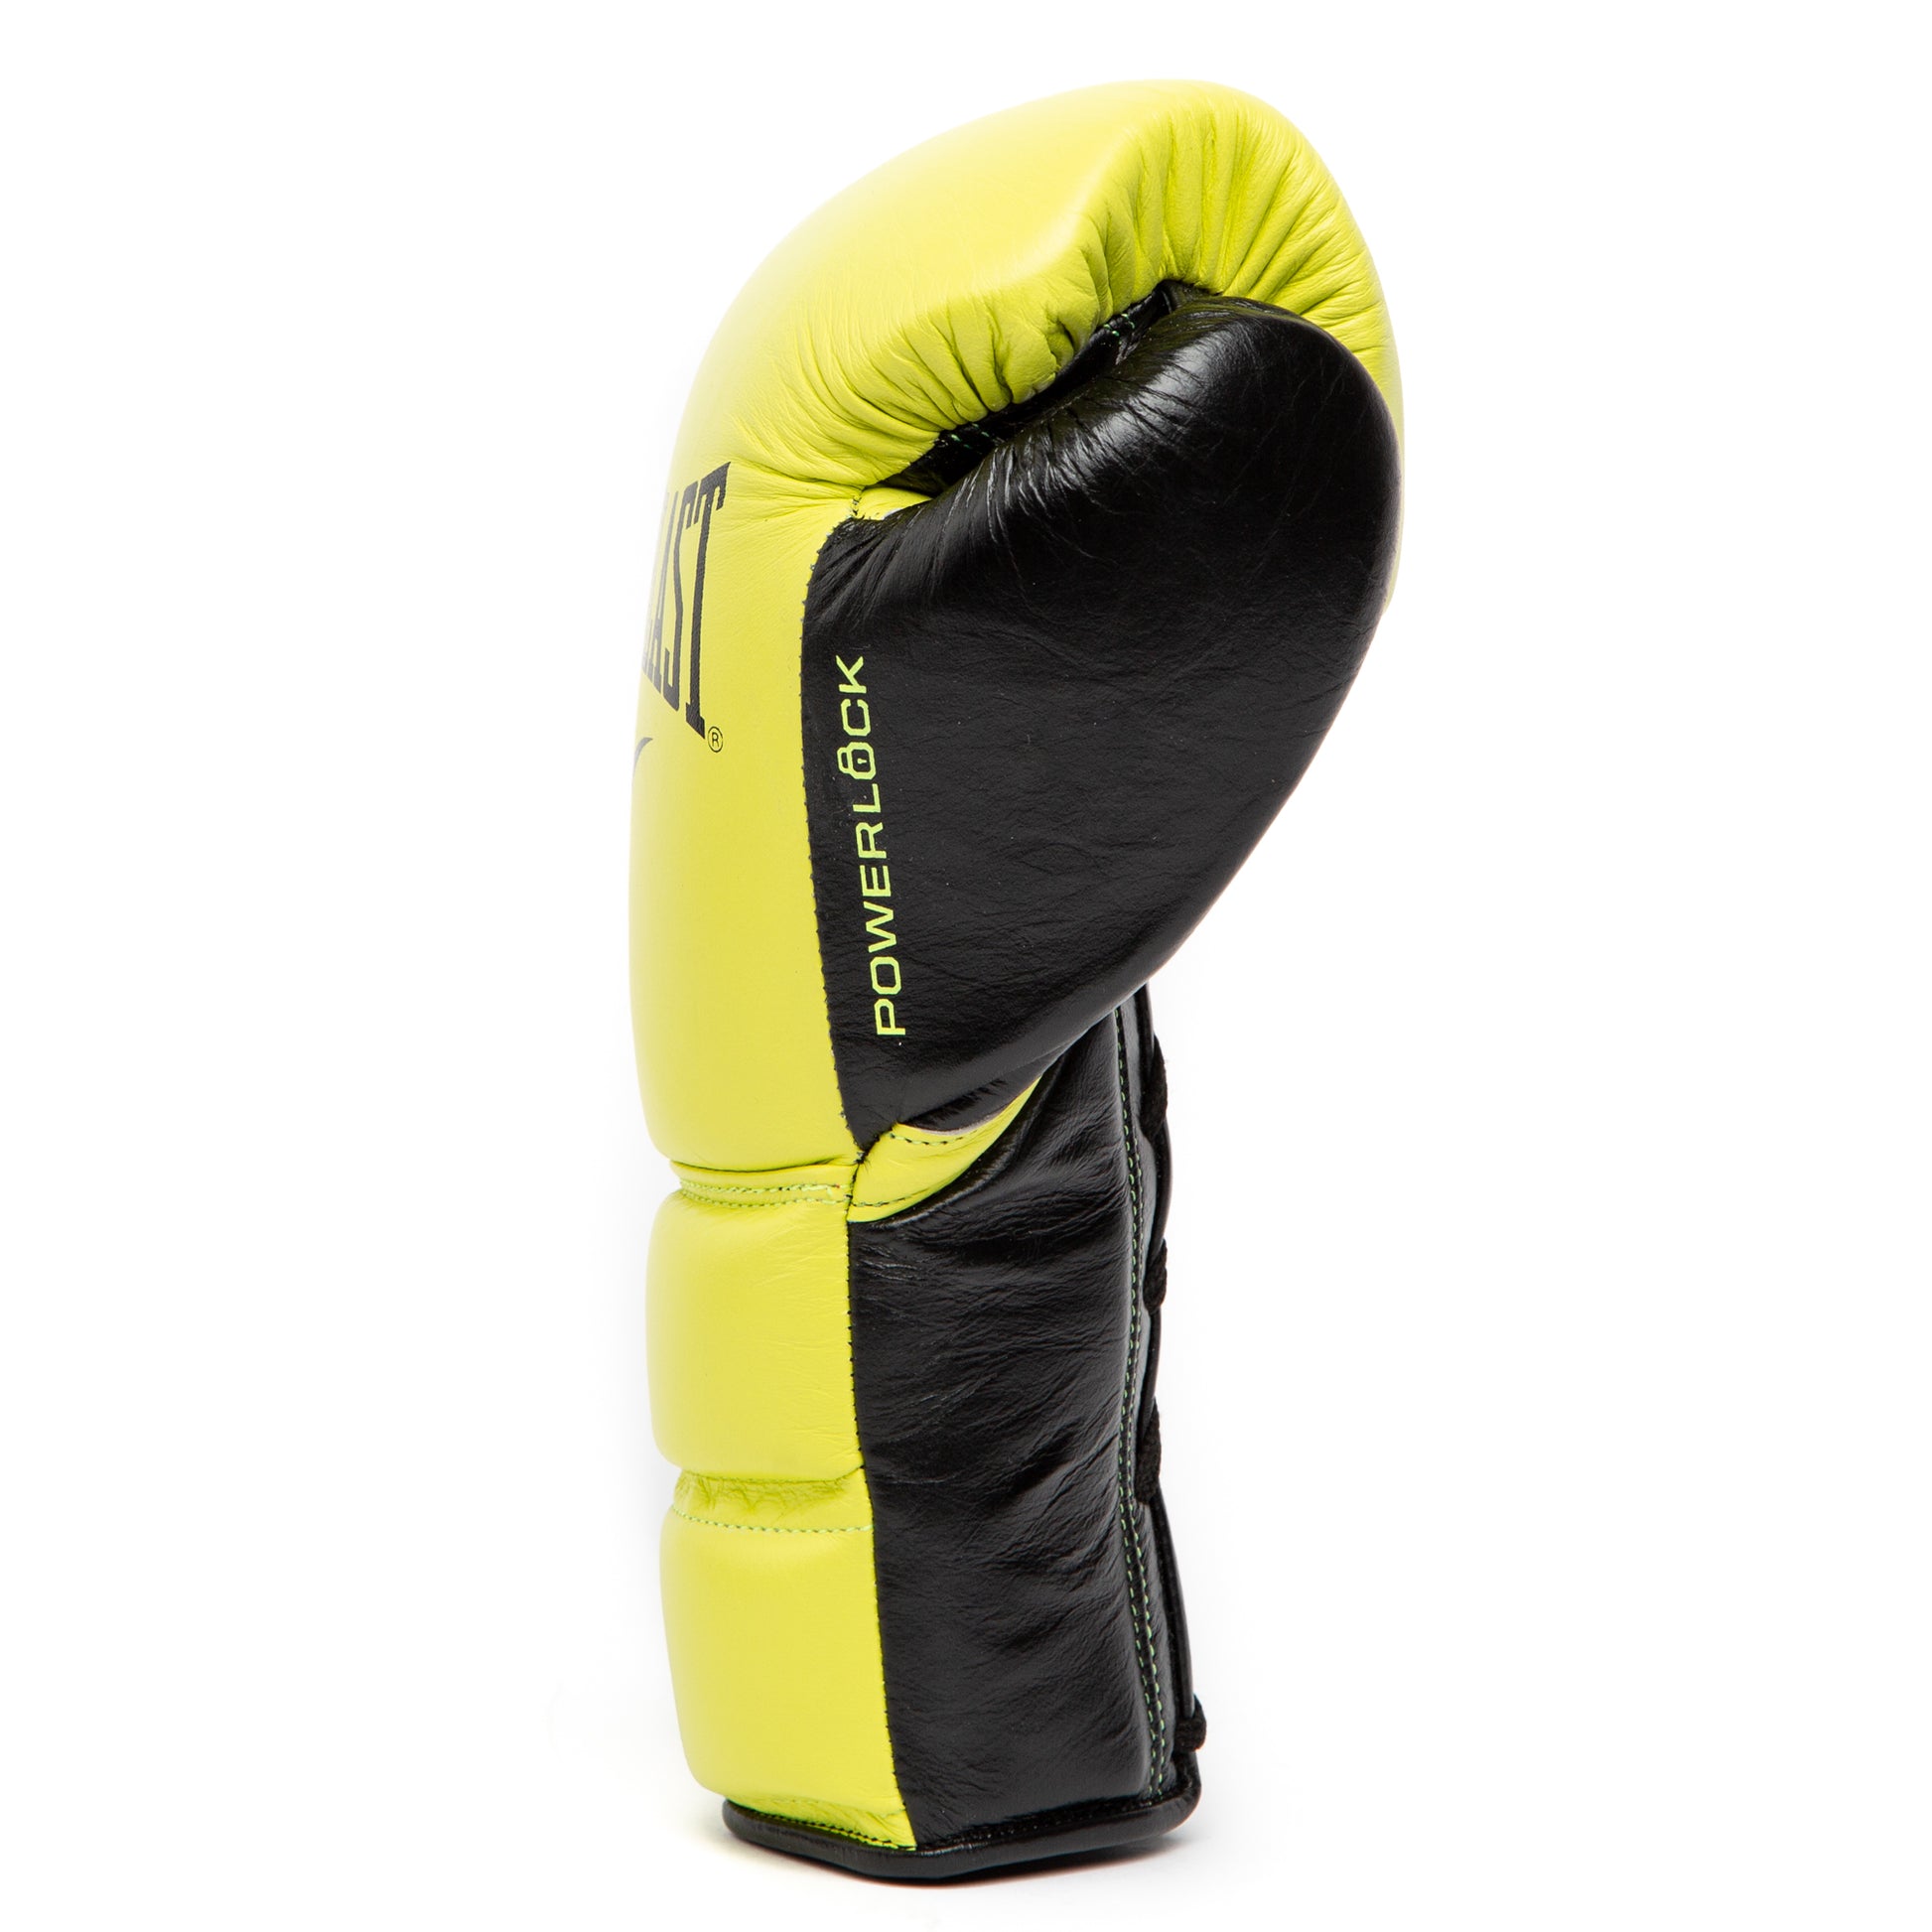 Powerlock 2 Pro Fight Gloves - Everlast